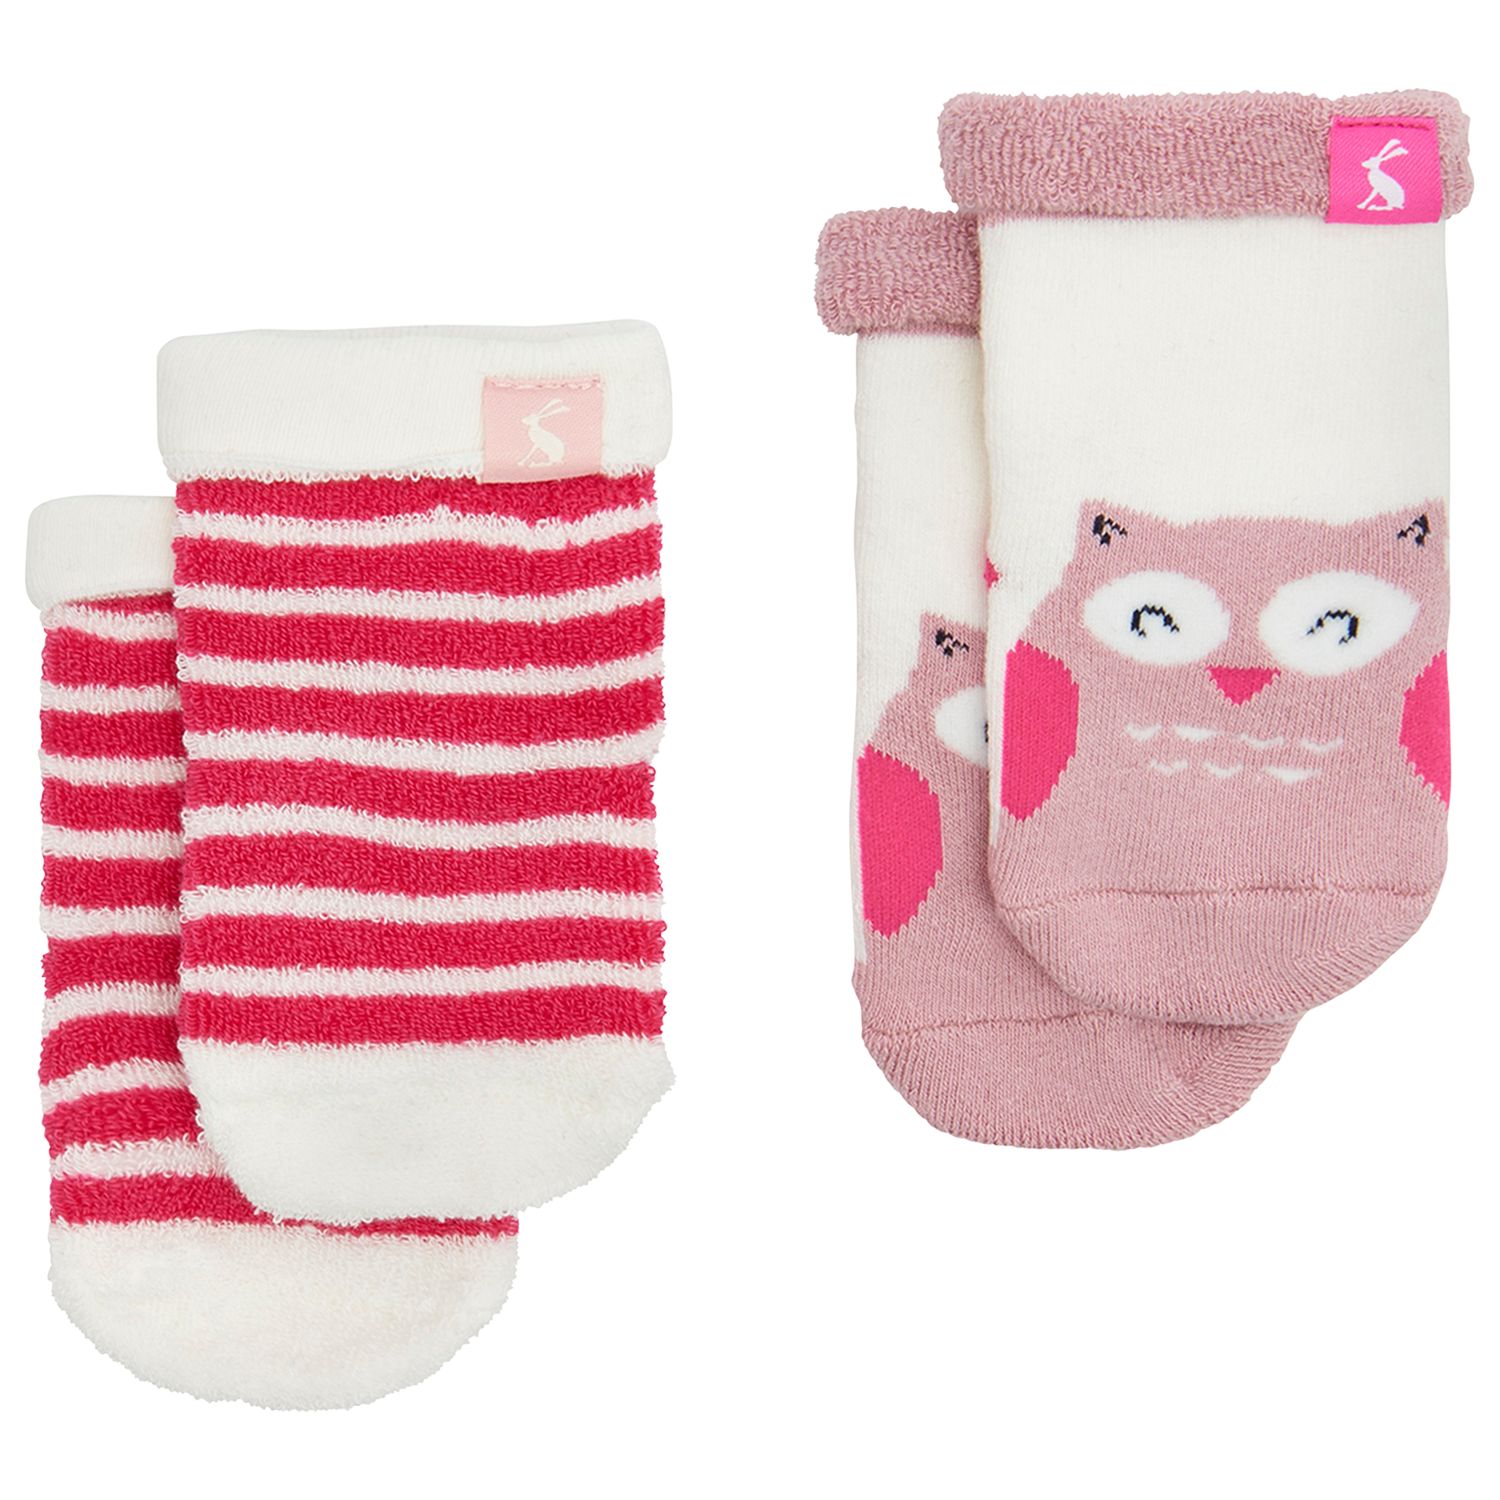 Baby Joule Terry Owl Socks, Pack of 2, Pink